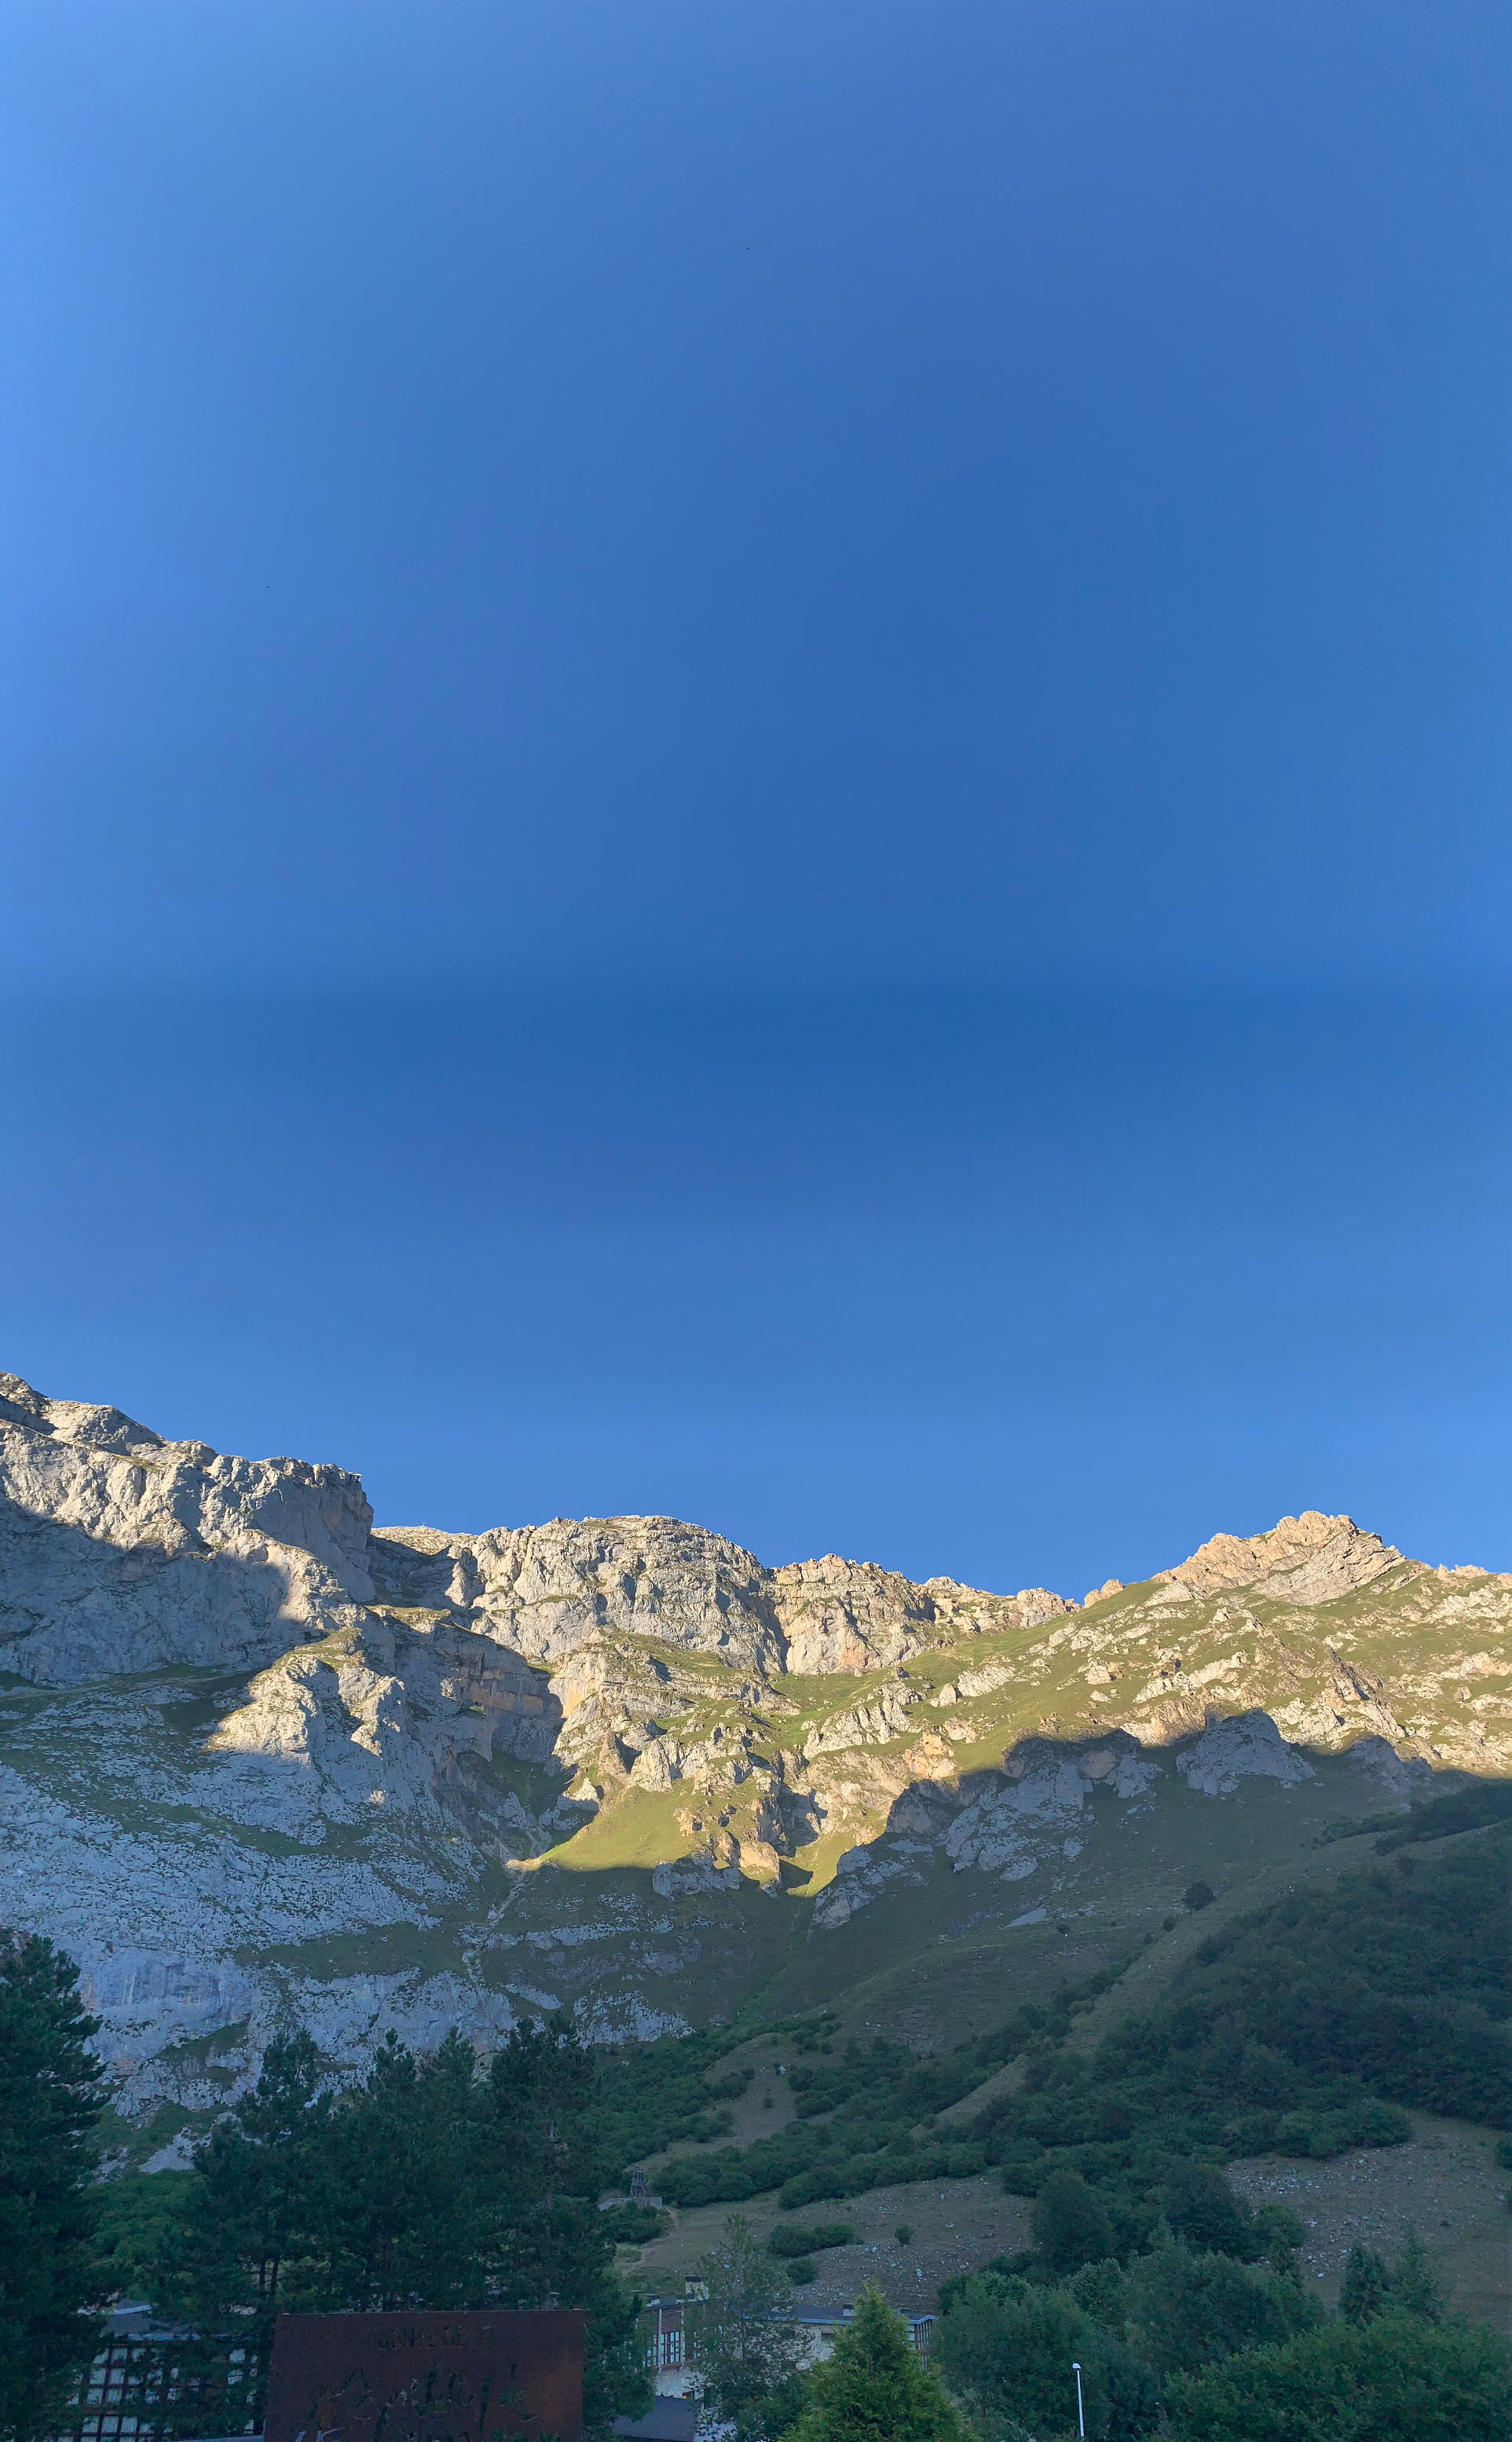 Explorando los Picos de Europa: Siguiendo la ruta desde Potes hasta Fuente Dé y su teleférico. Foto: Connie Darilek.